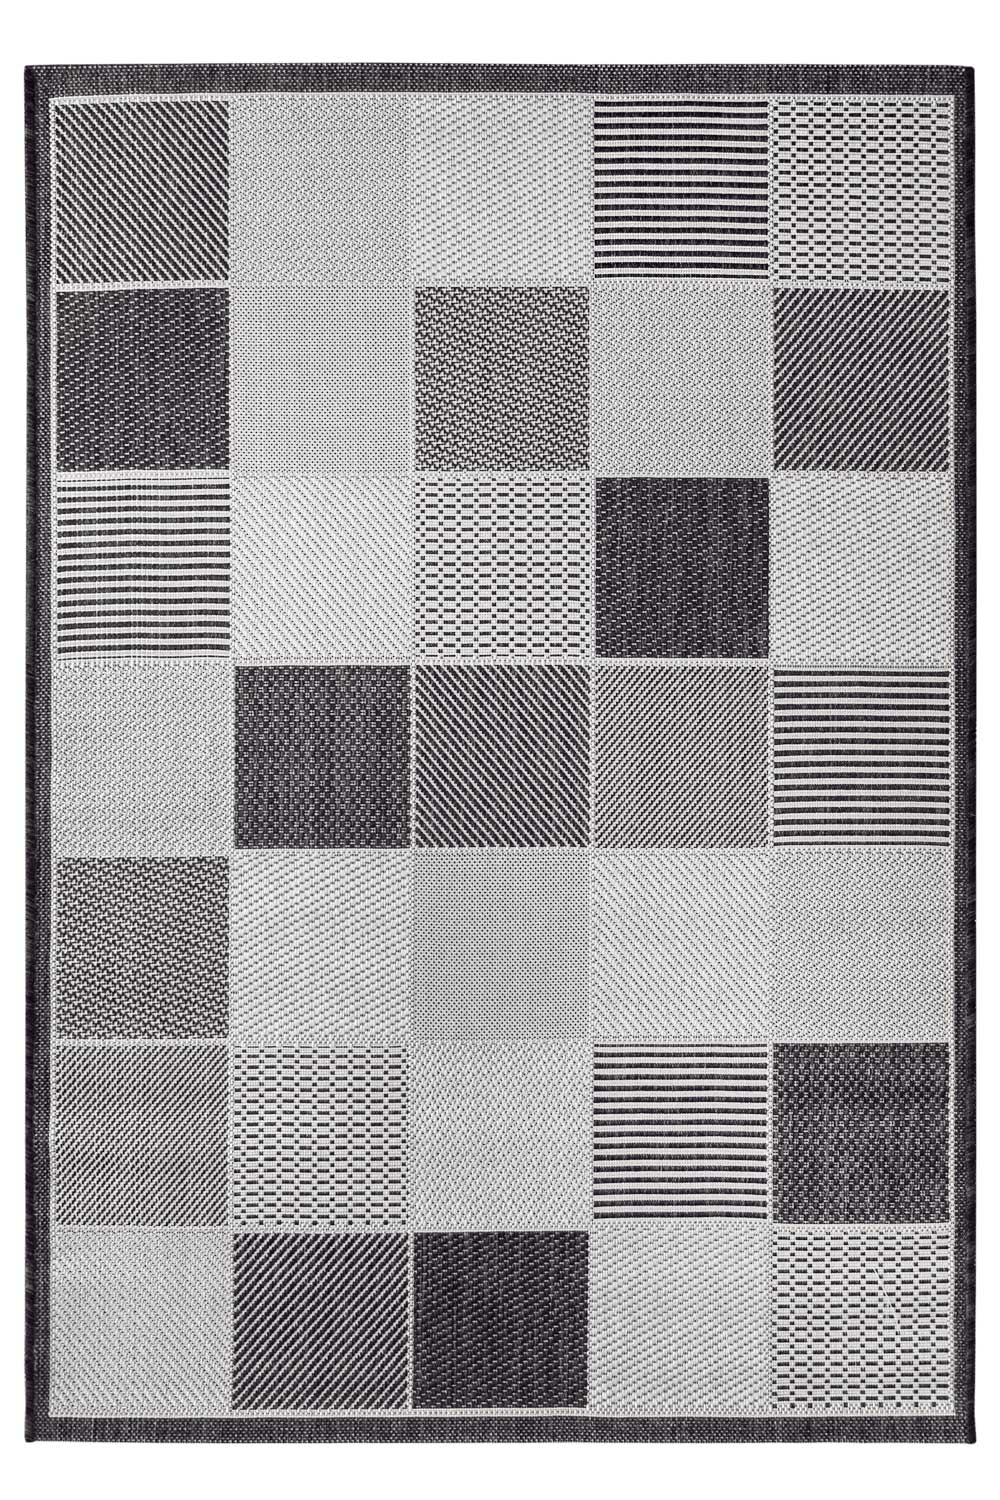 Kusový koberec NERD 1953/08 140x200 cm